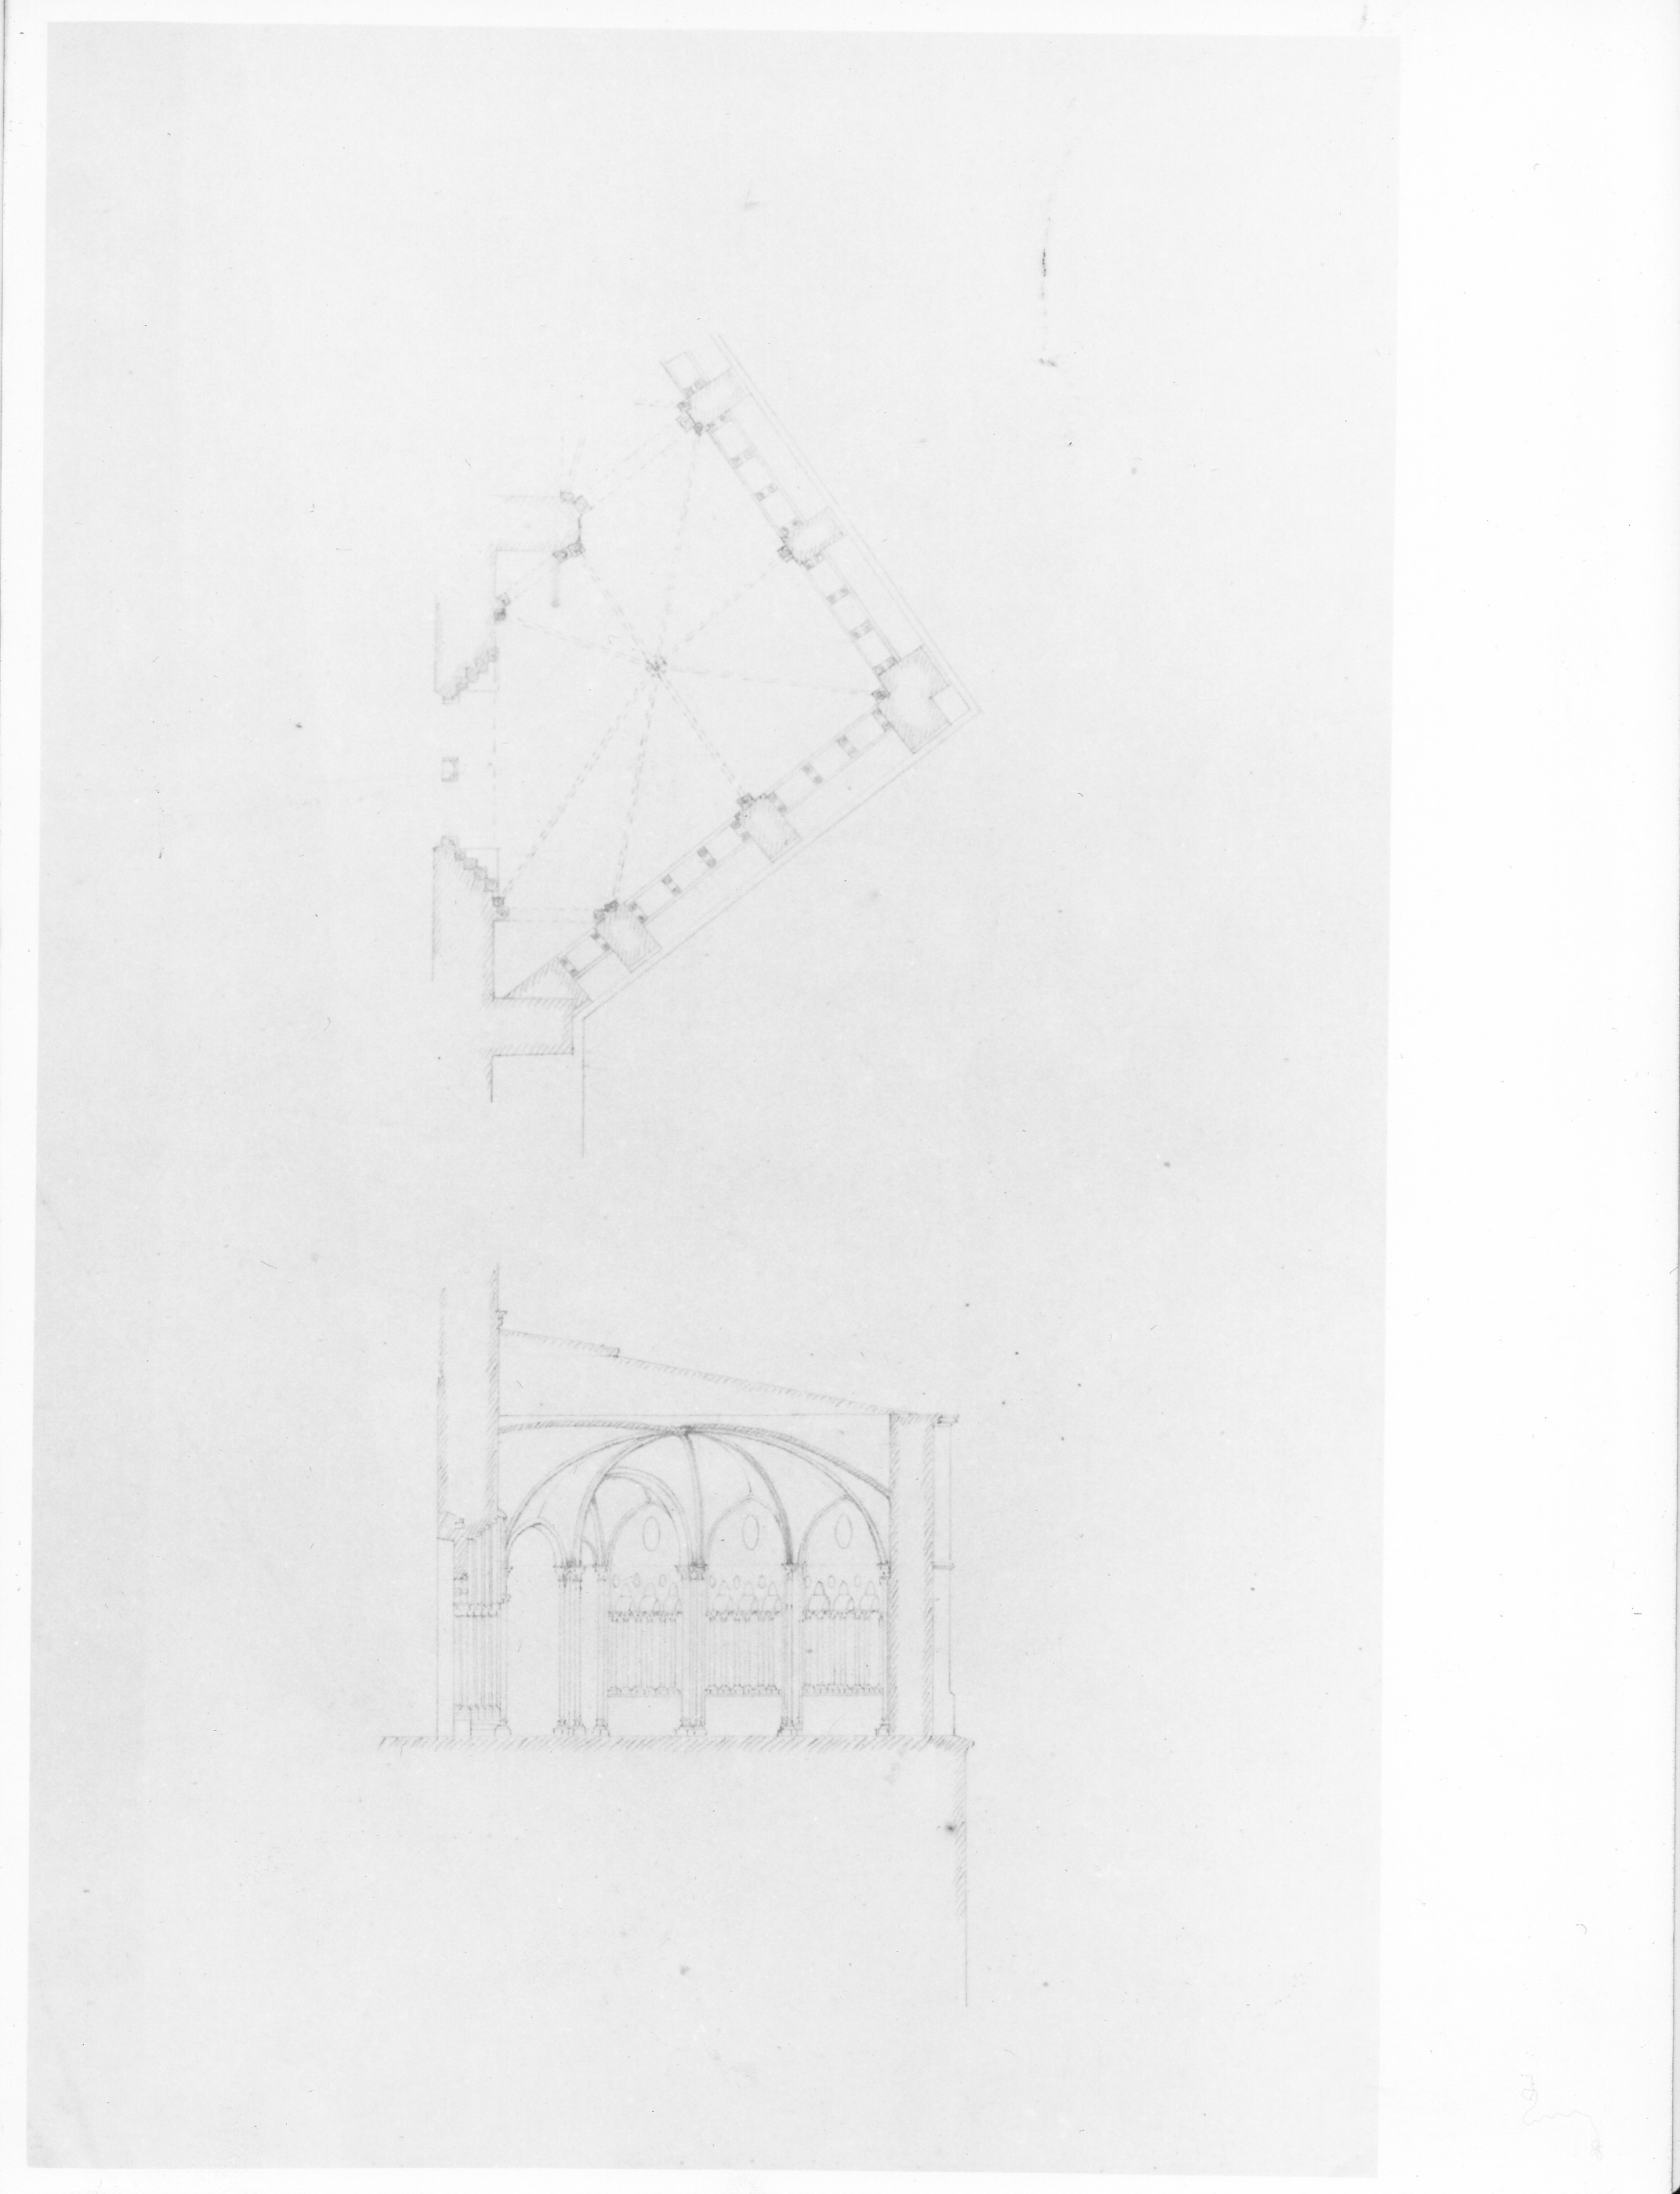 Sacra di San Michele della Chiusa a Sant'Ambrogio di Susa (TO) (disegno architettonico) - ambito piemontese (XIX)